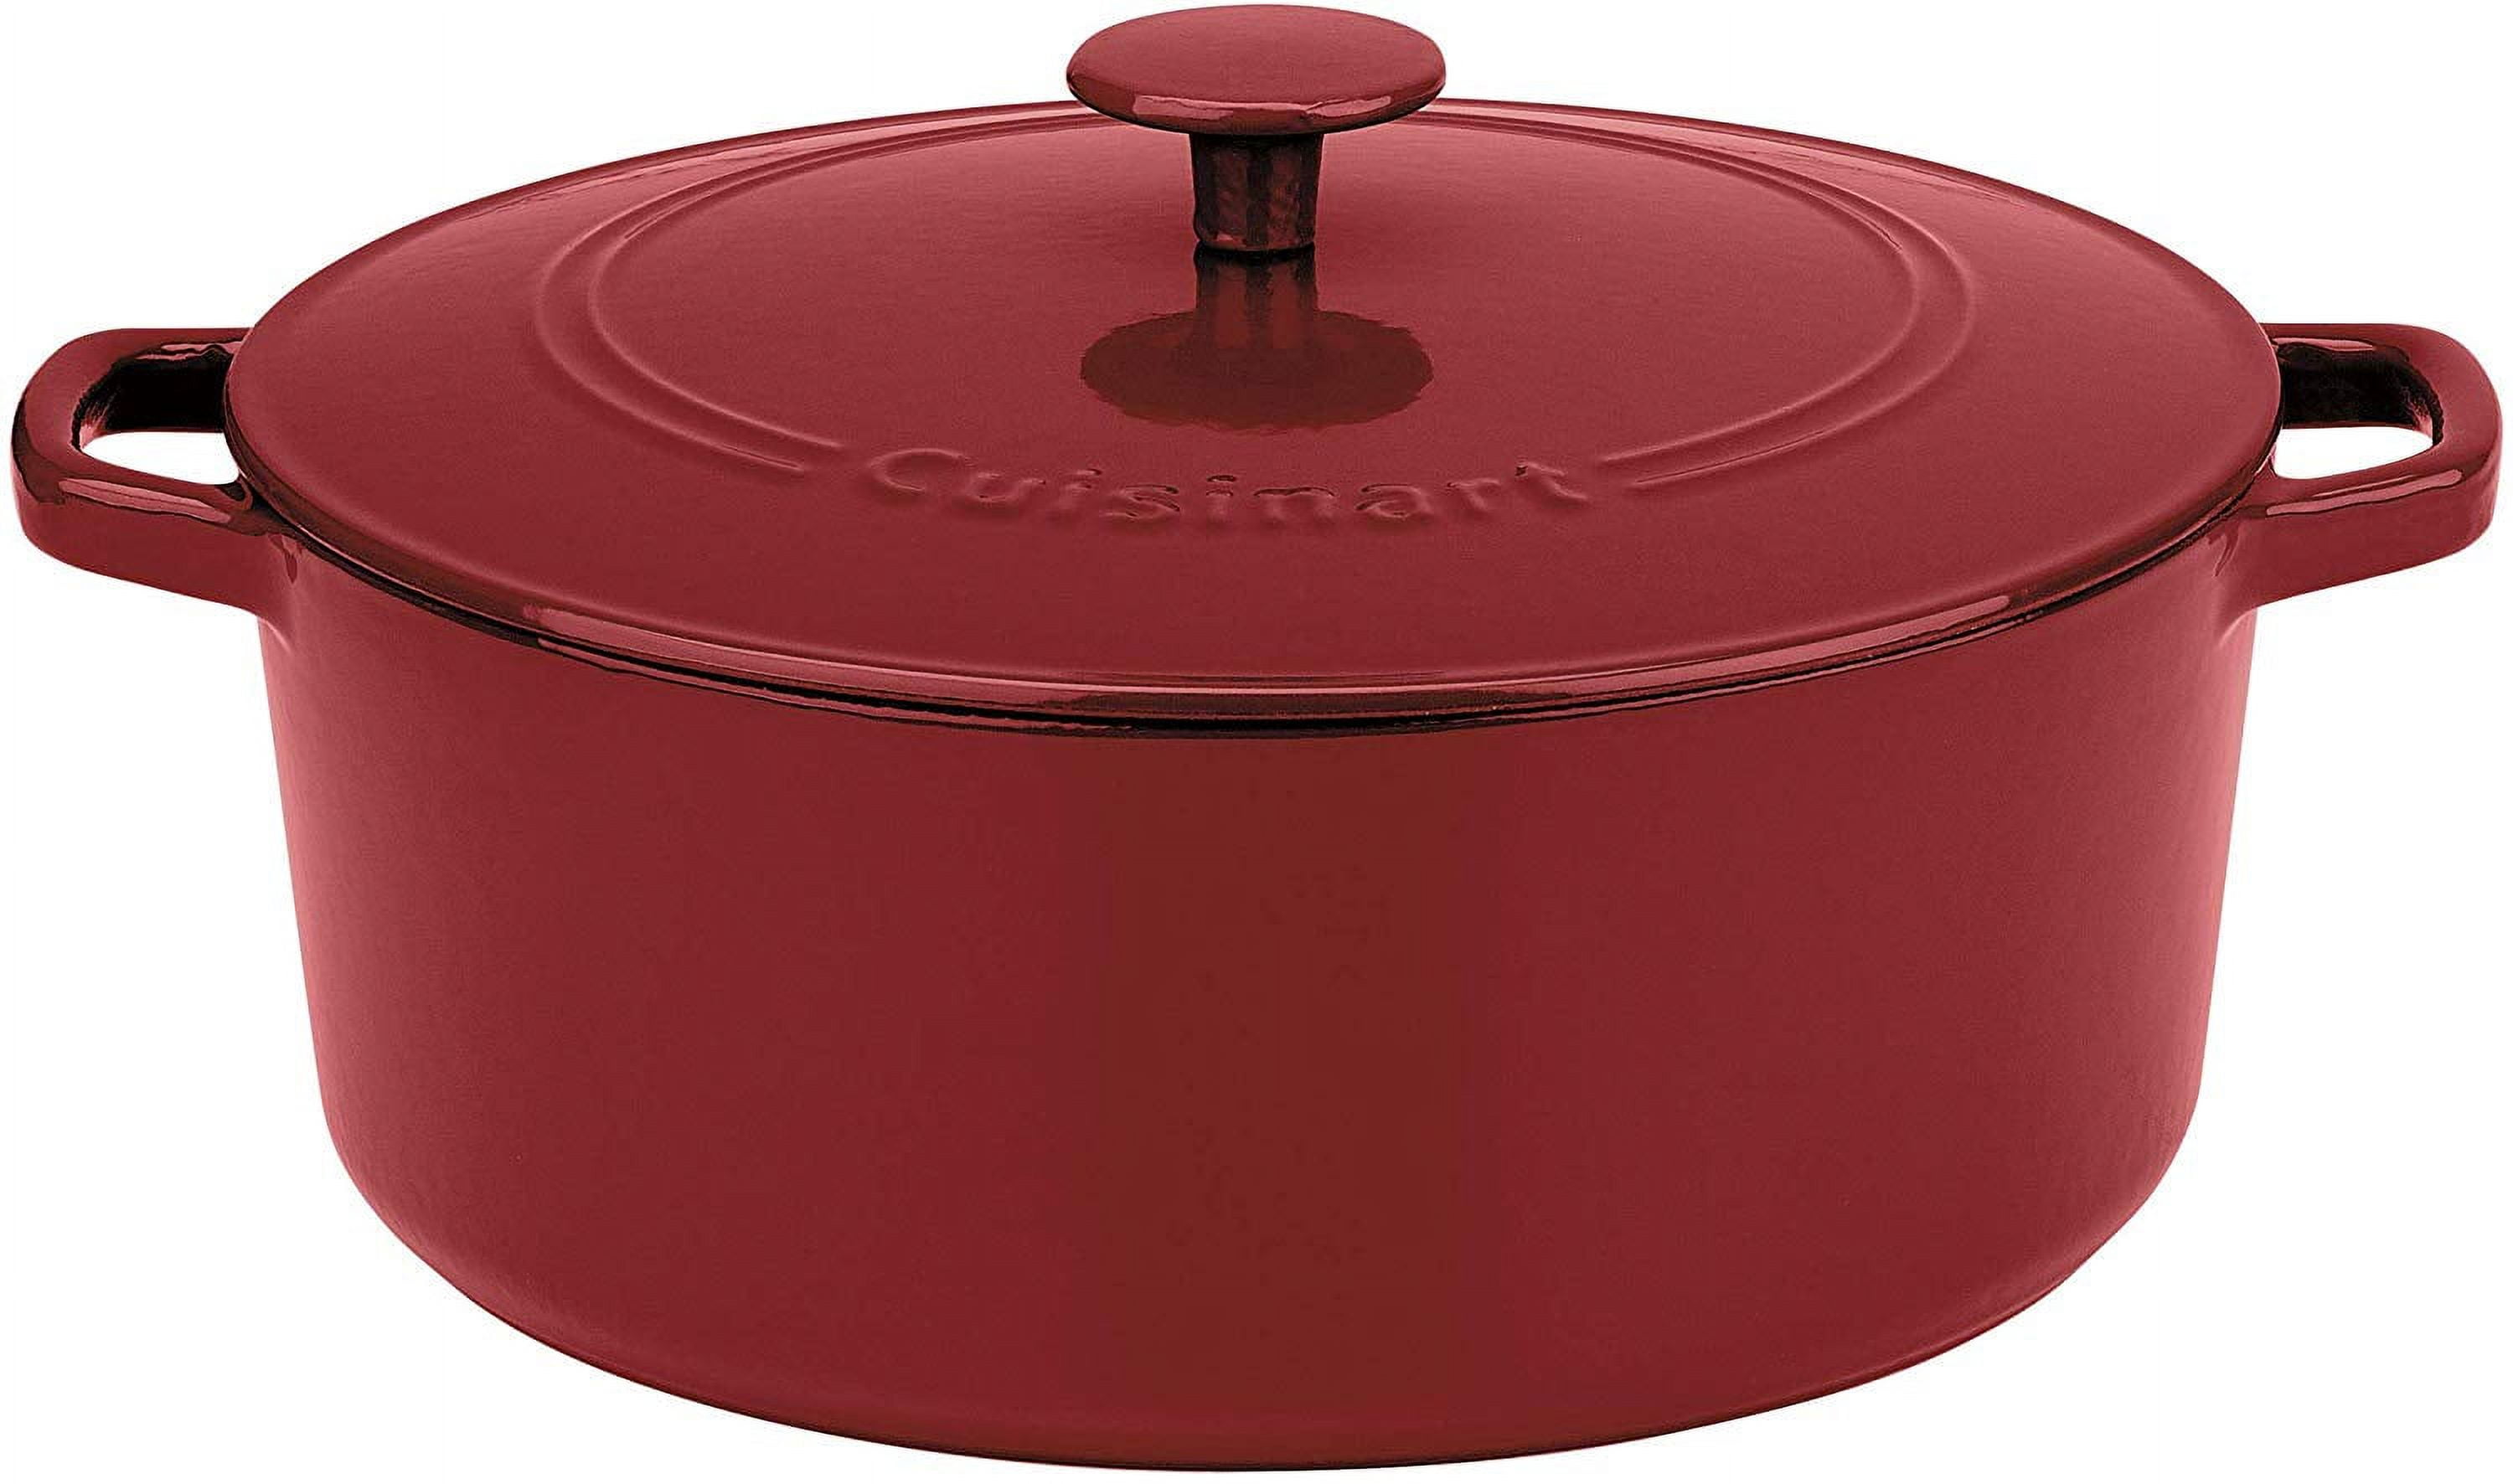 Cuisinart 12 Enameled Cast Iron Chicken Fryer - Cardinal Red